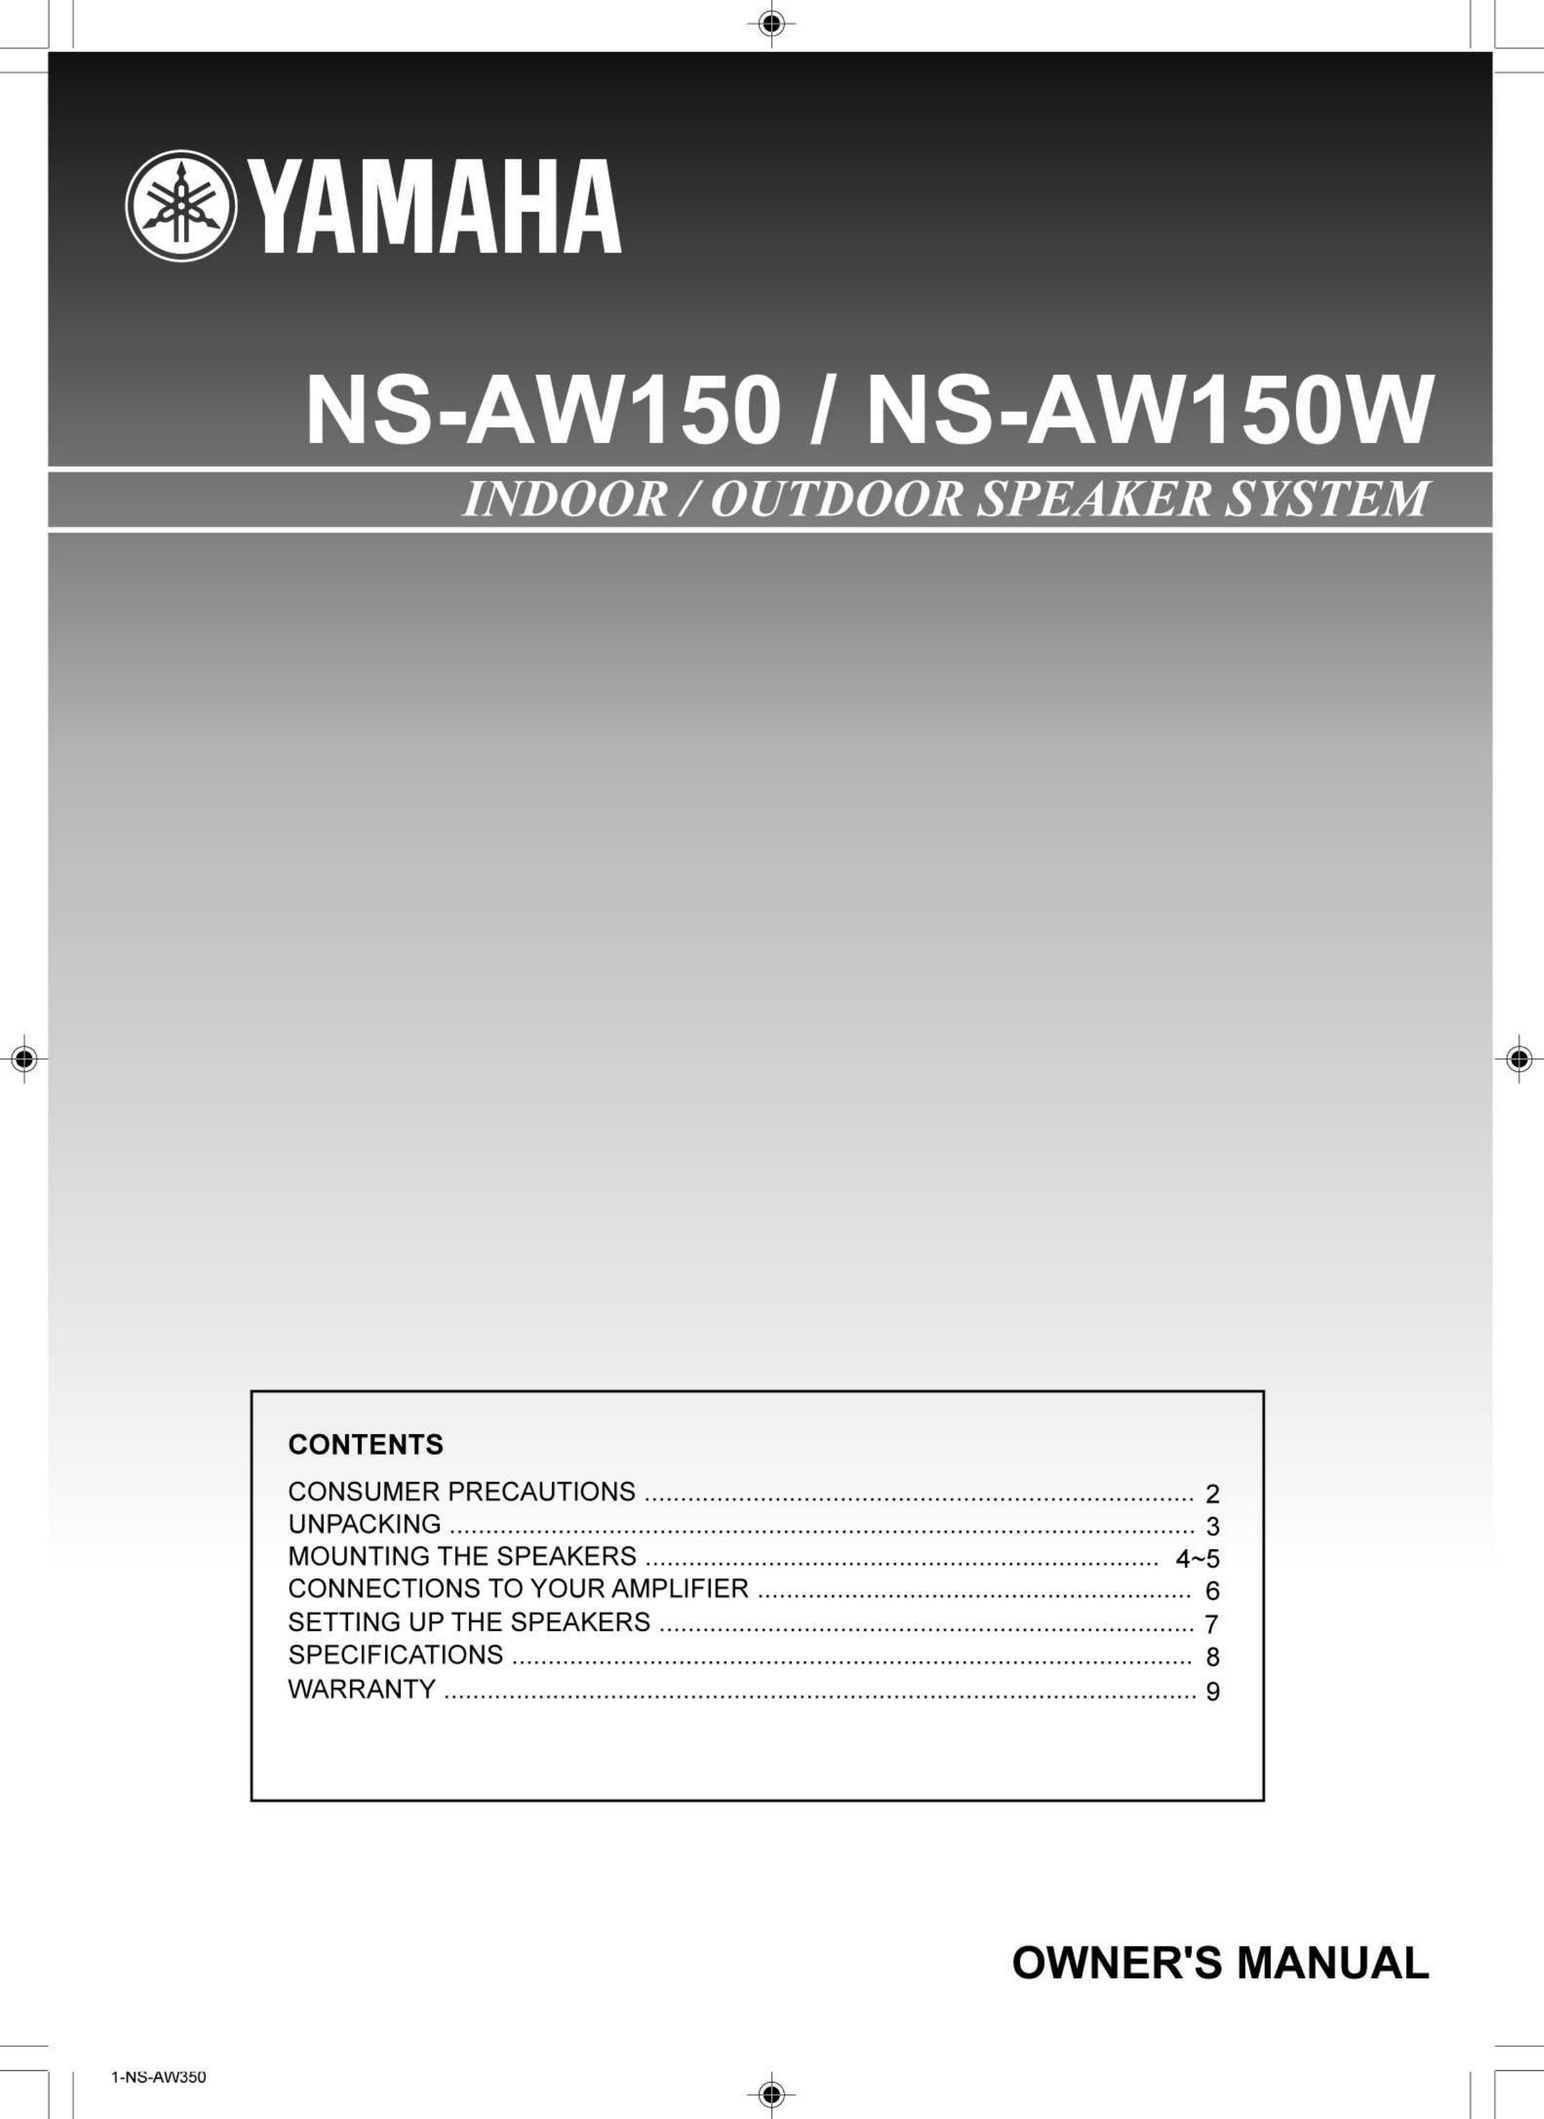 Yamaha NS-AW150 Black (Pr.) Speaker User Manual